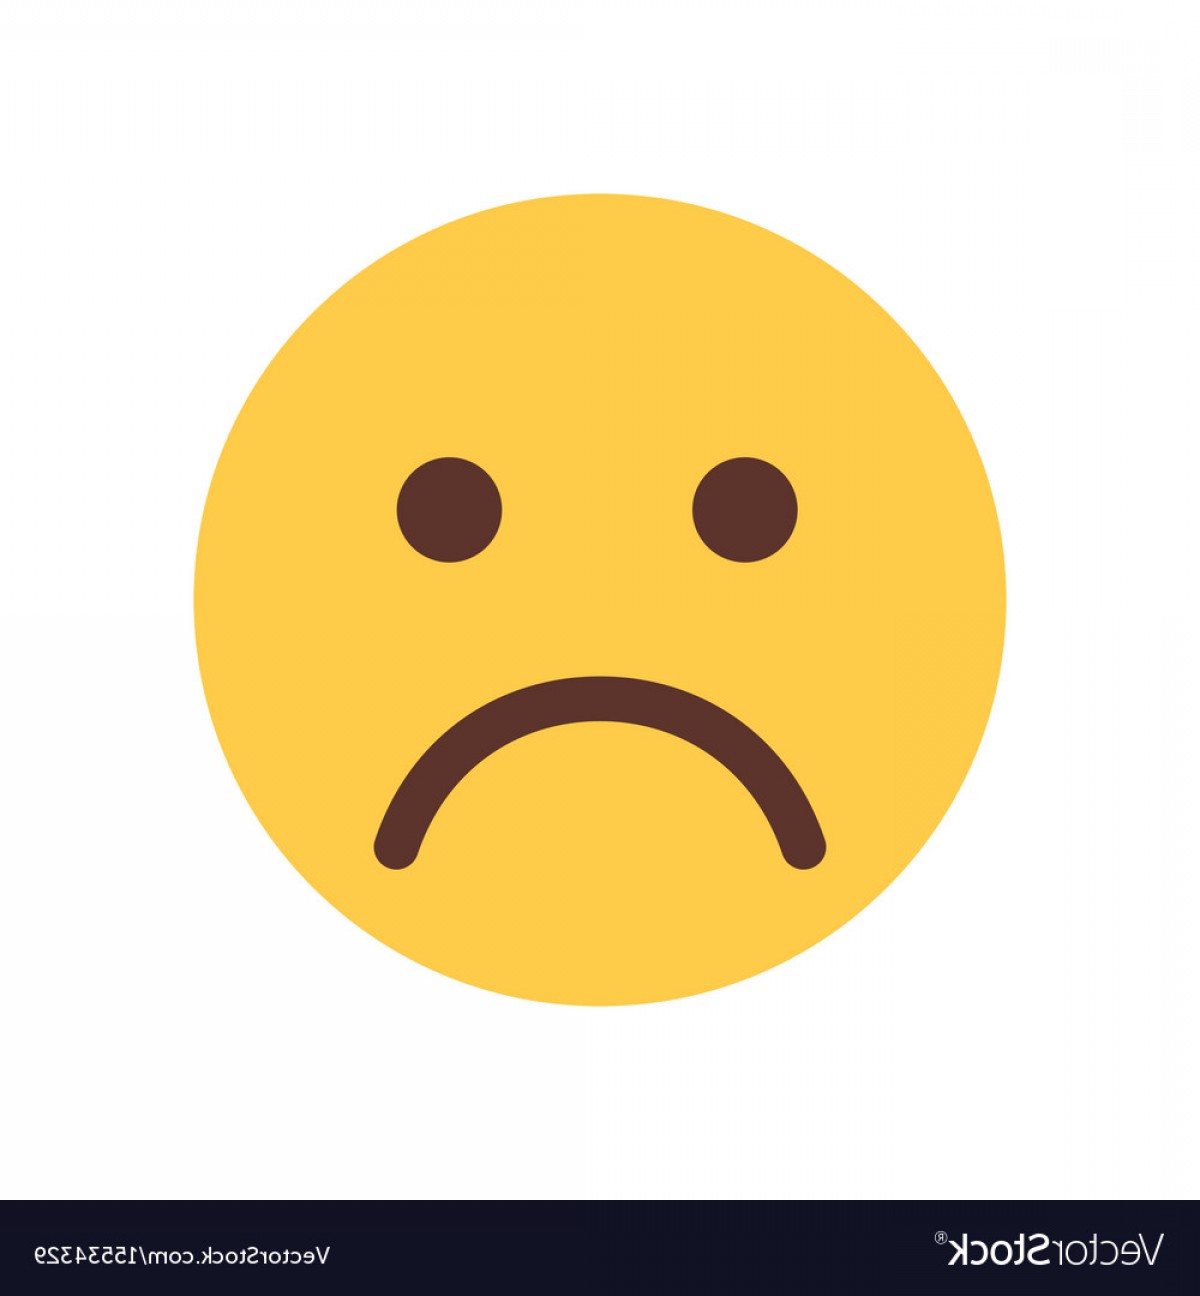 Sad Emoji Vector at Vectorified.com | Collection of Sad Emoji Vector ...